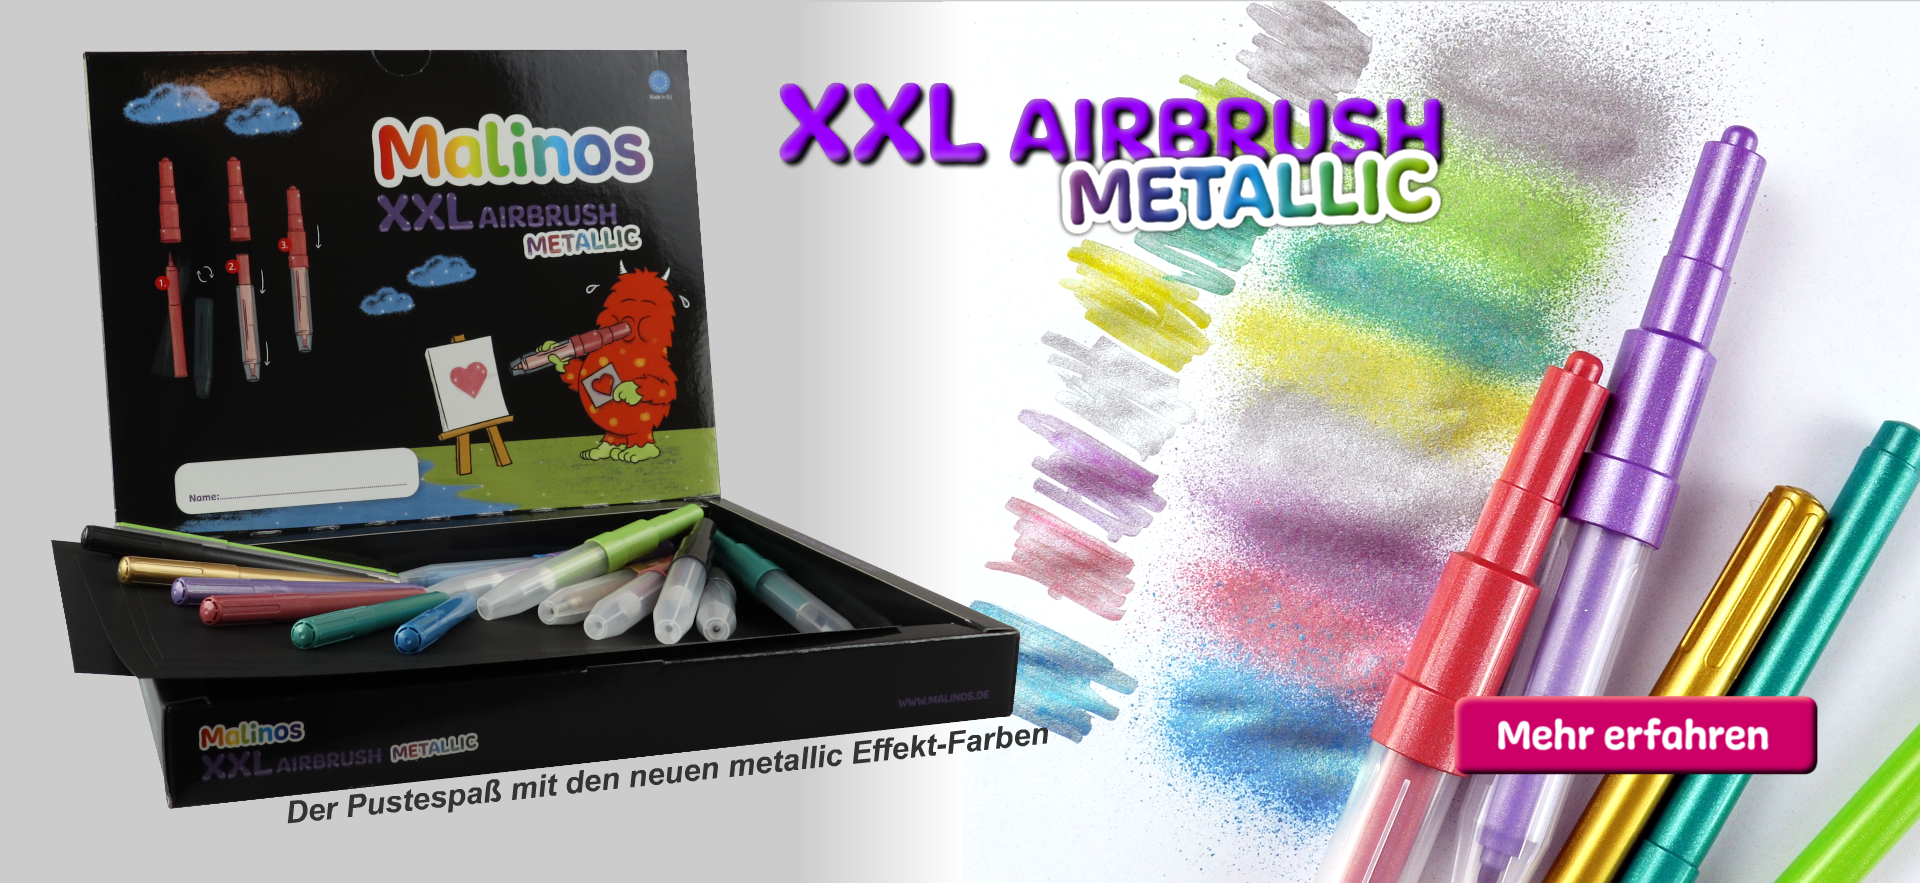 XXL Airbrush Metallic - Der Pustespaß mit neuen metallic Effekt-Farben.